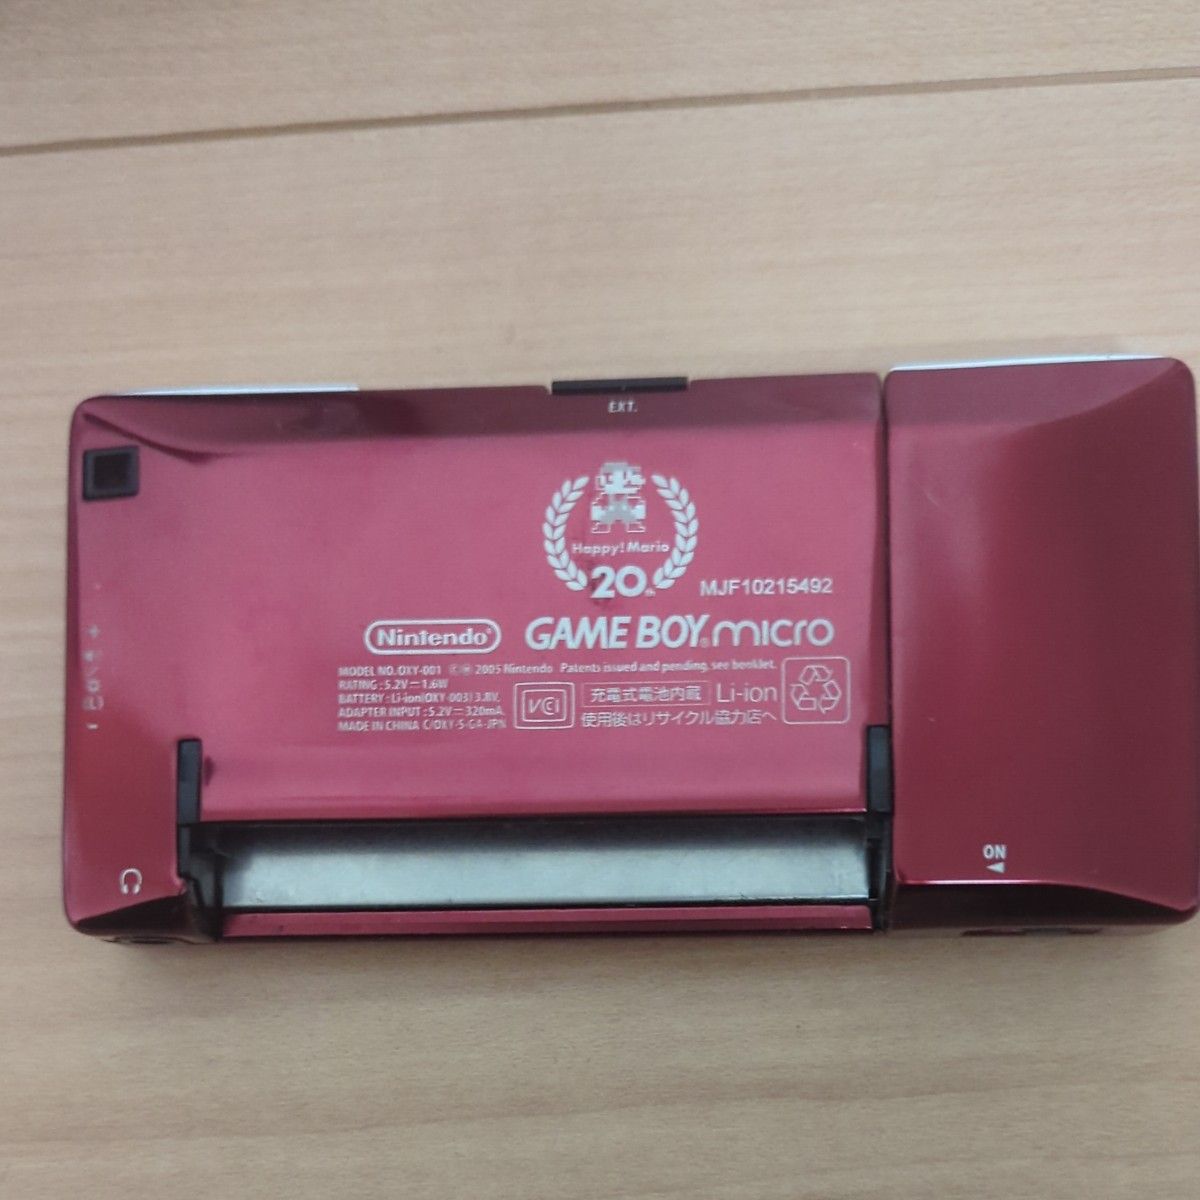 ファミコンカラー ゲームボーイミクロ 任天堂 ニンテンドー Nintendo GAME BOY micro ファミコンバージョン